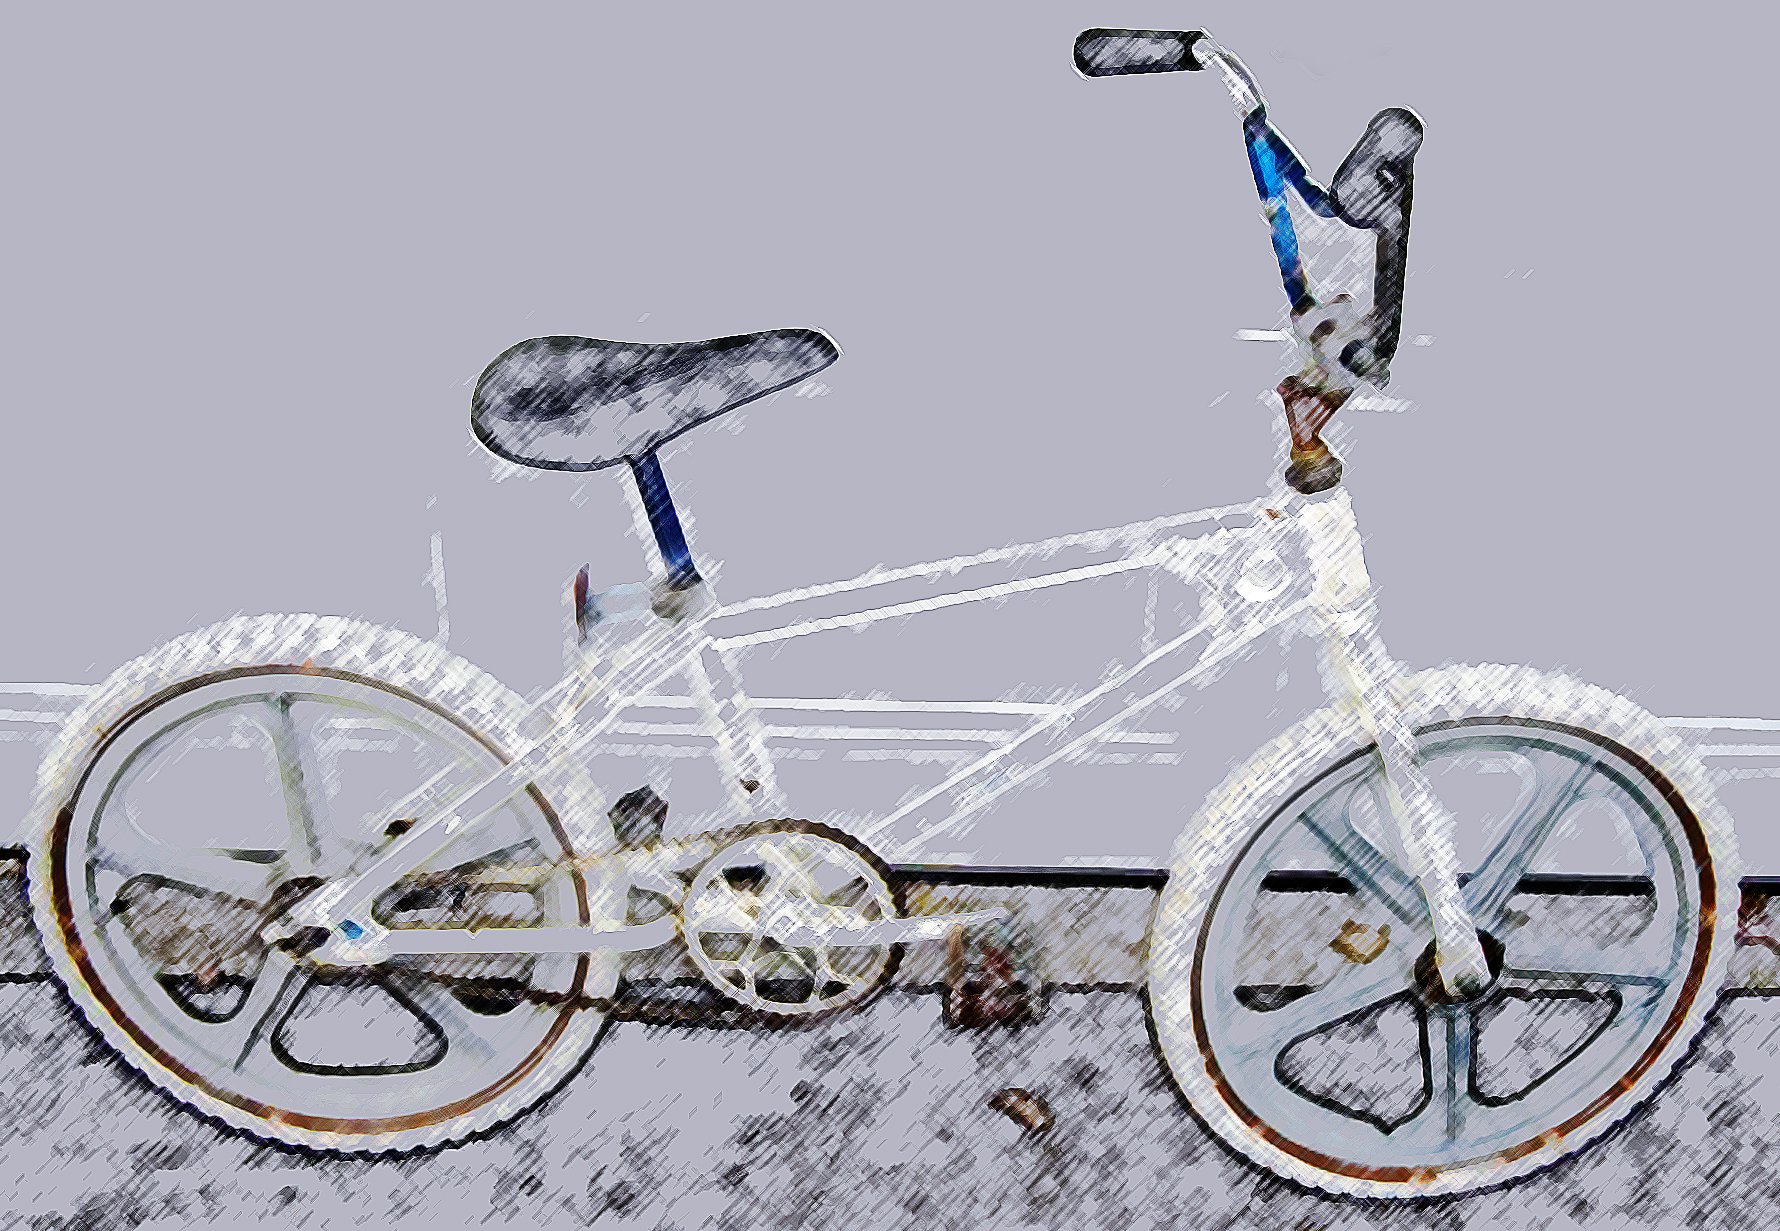 mongoose, Bicycle, Bike Wallpaper